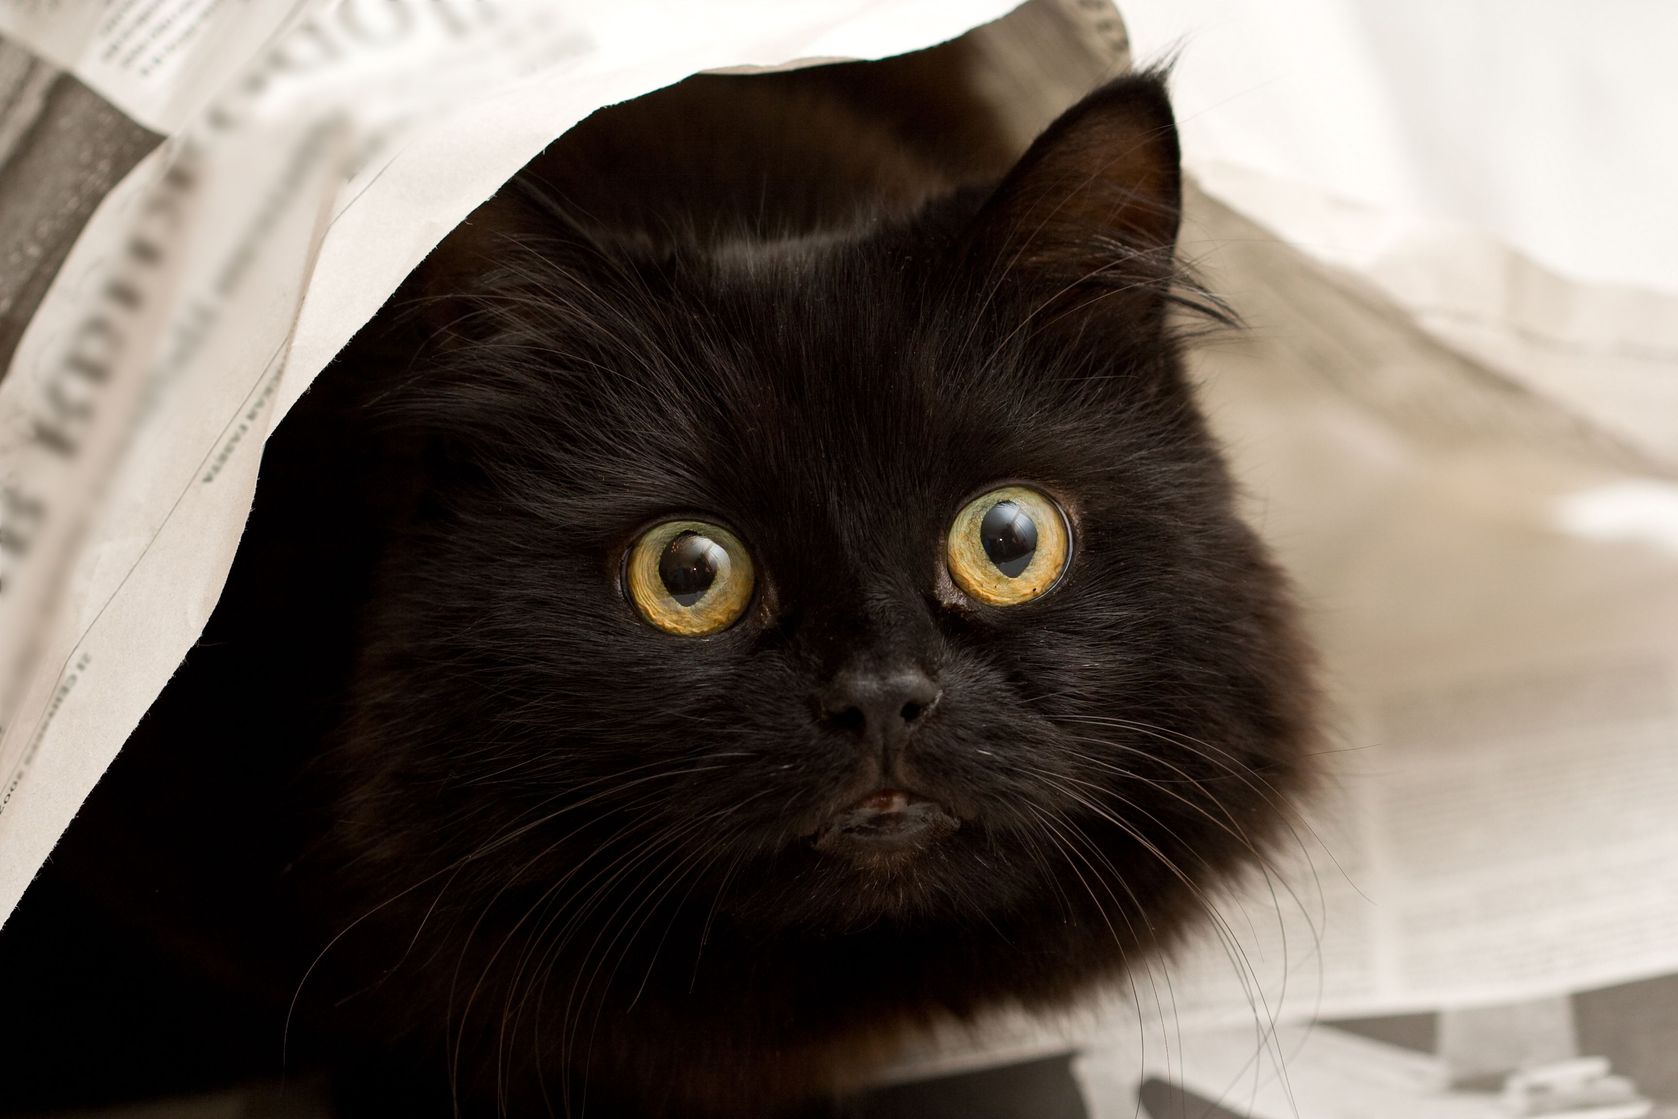 Cat newspaper